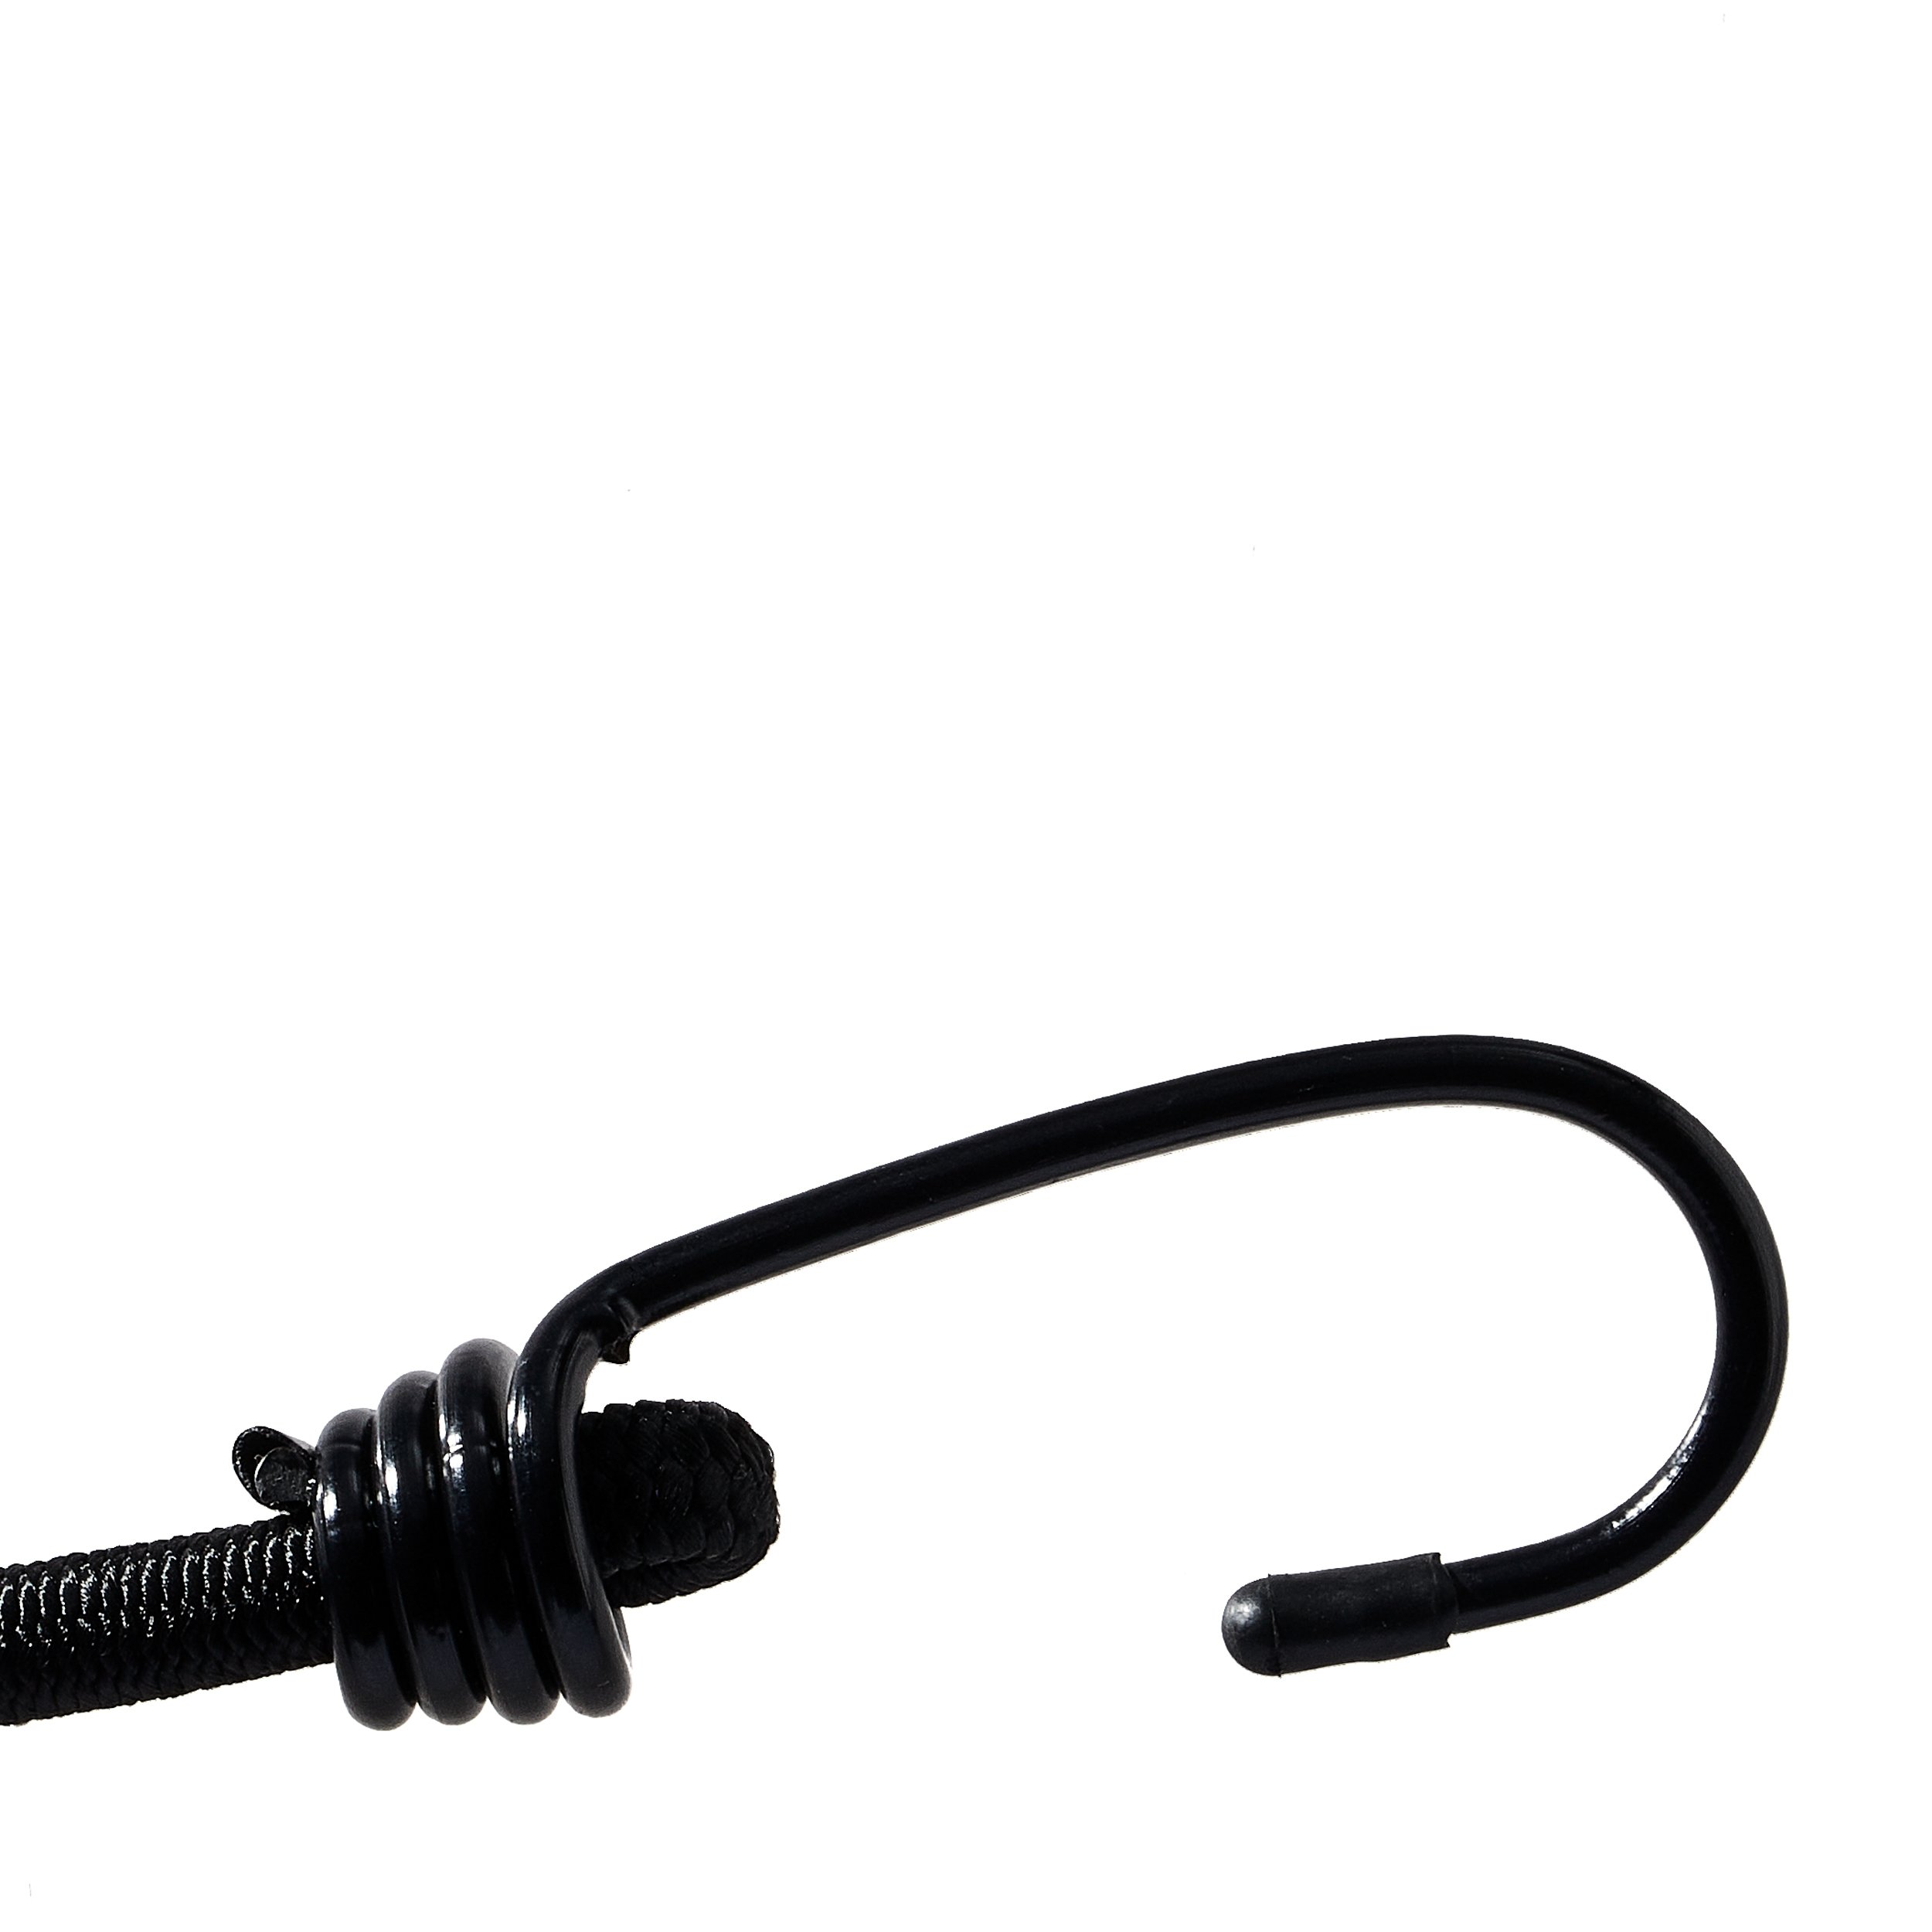 Corda elastica con gancio metallico, extra forte, 170 mm, nero